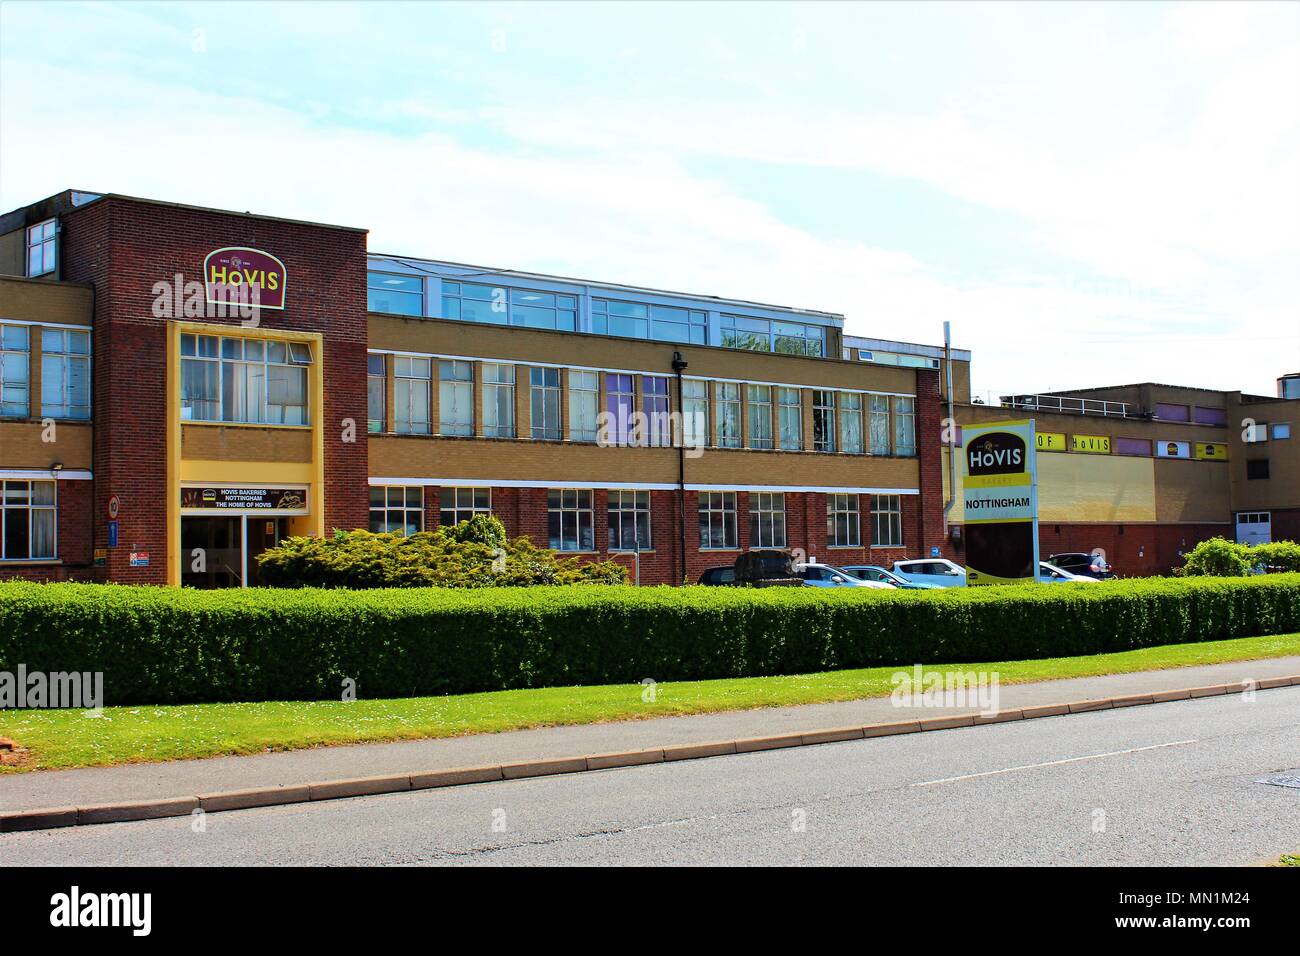 La boulangerie de Watnall Hovis, Nottingham, Royaume-Uni, prises le 13 mai 2018 Banque D'Images